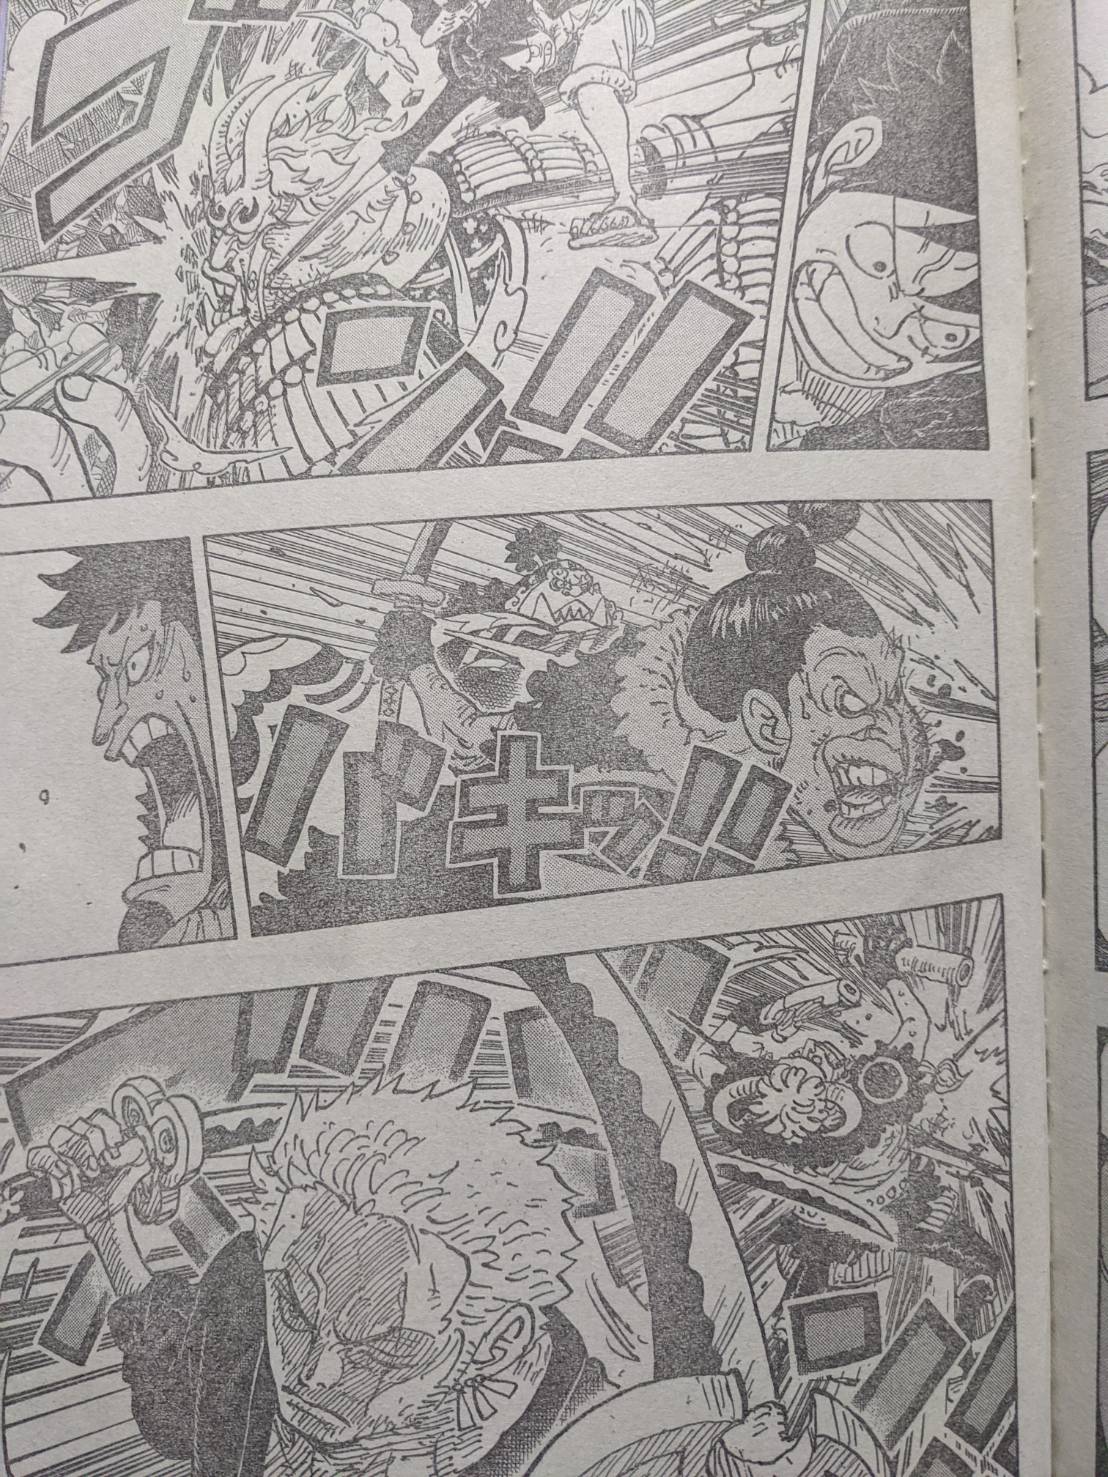 ワンピース915話扉絵のベラミーが染物職人を目指す事についての考察 One Piece世界でも名うてのdqnのその後 ワンピース考察 甲塚誓ノ介のいい芝居してますね